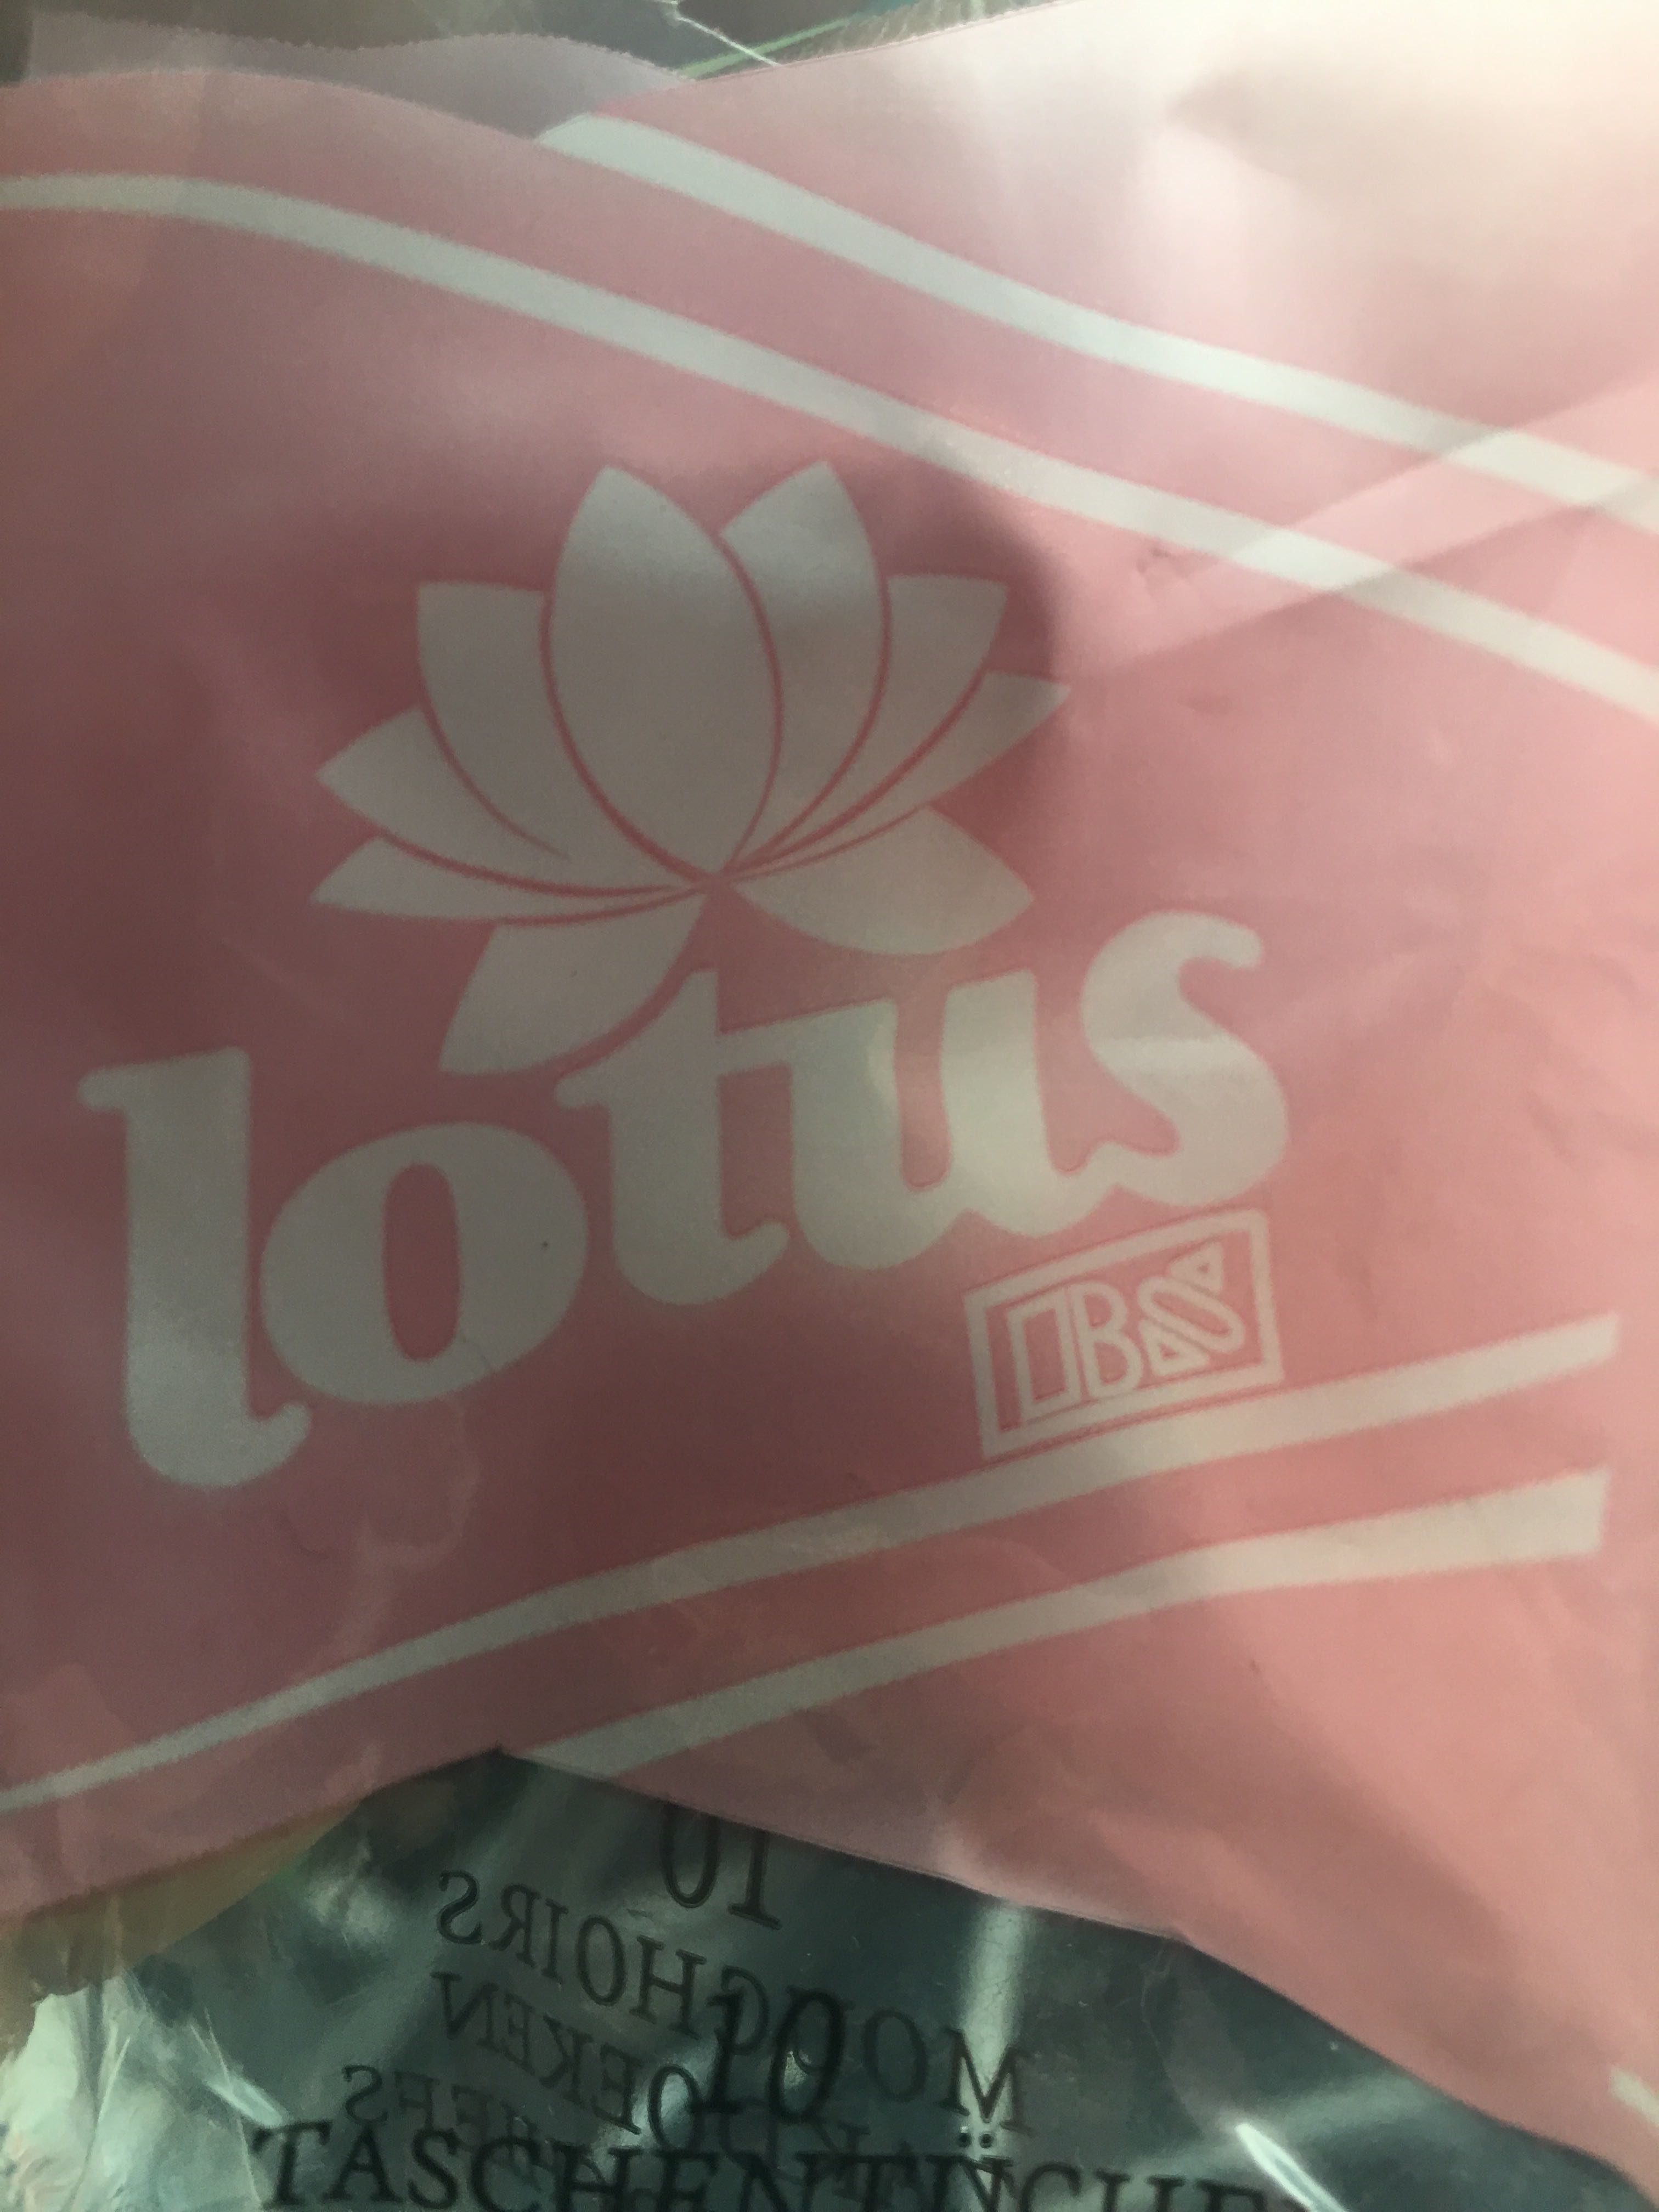 Lotus mouchoir en papier - Продукт - fr